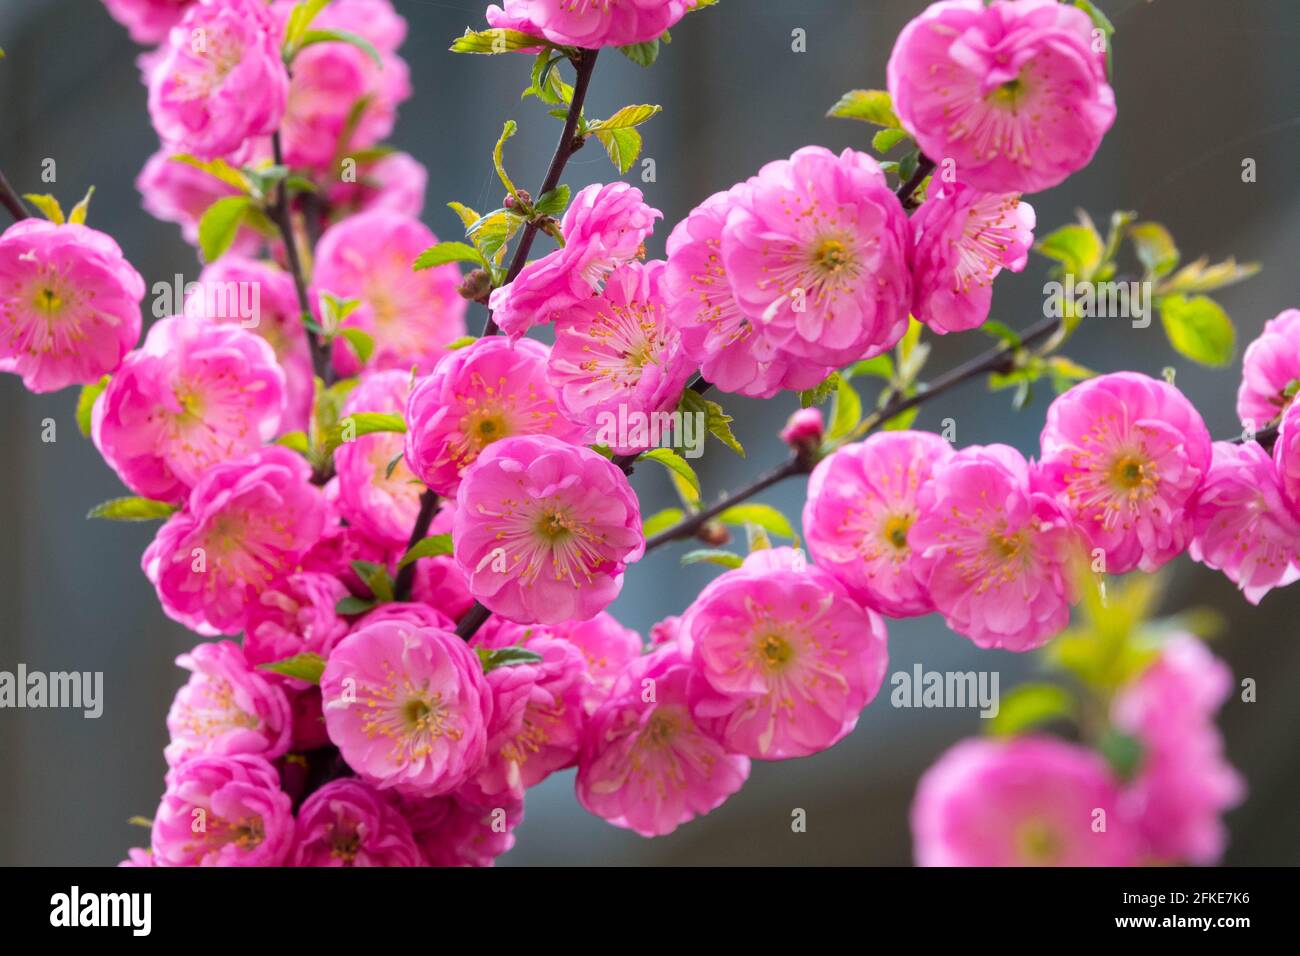 Pink Prunus triloba flowering shrub Flowering almond blooming Stock Photo